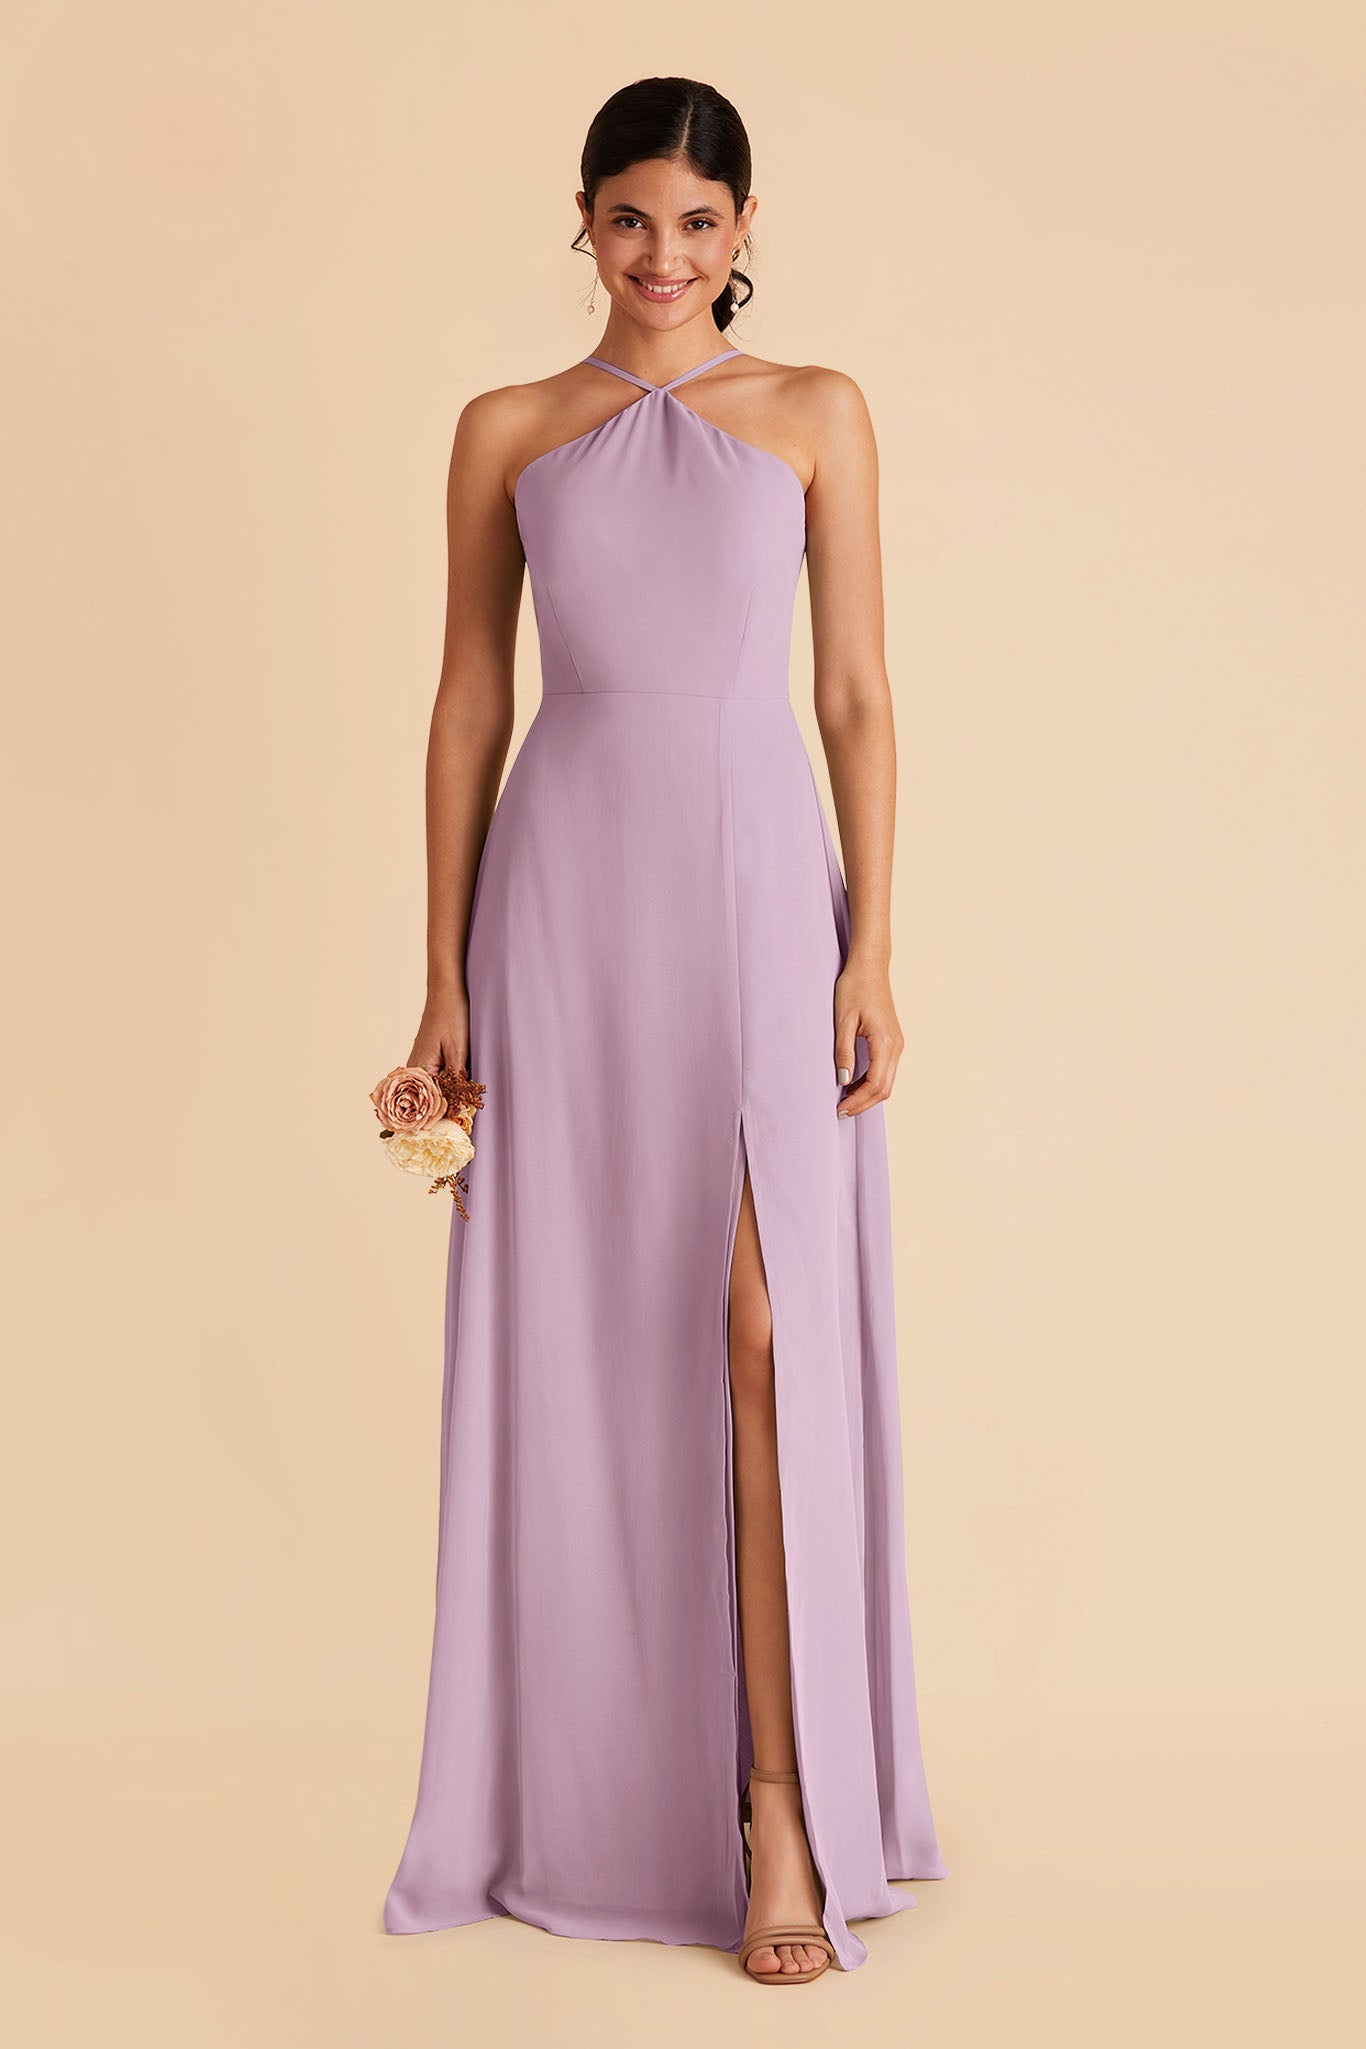 Lavender Halter Dress